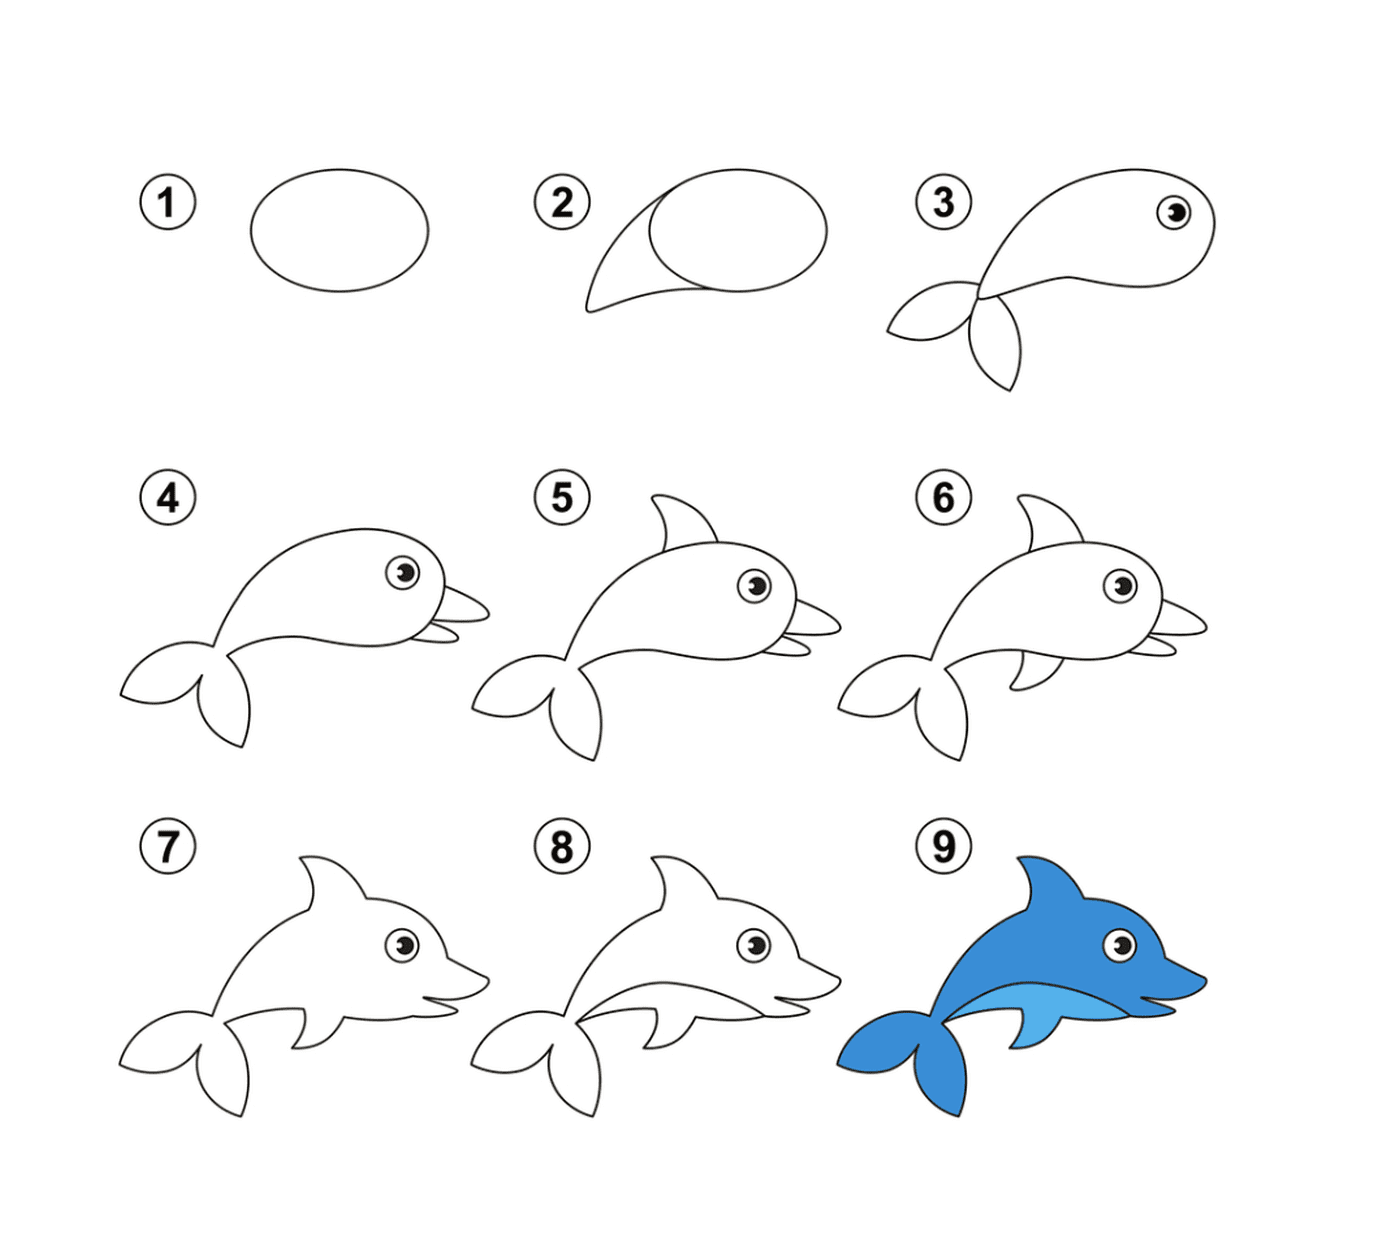  一步一步地指示如何绘制容易的海豚 